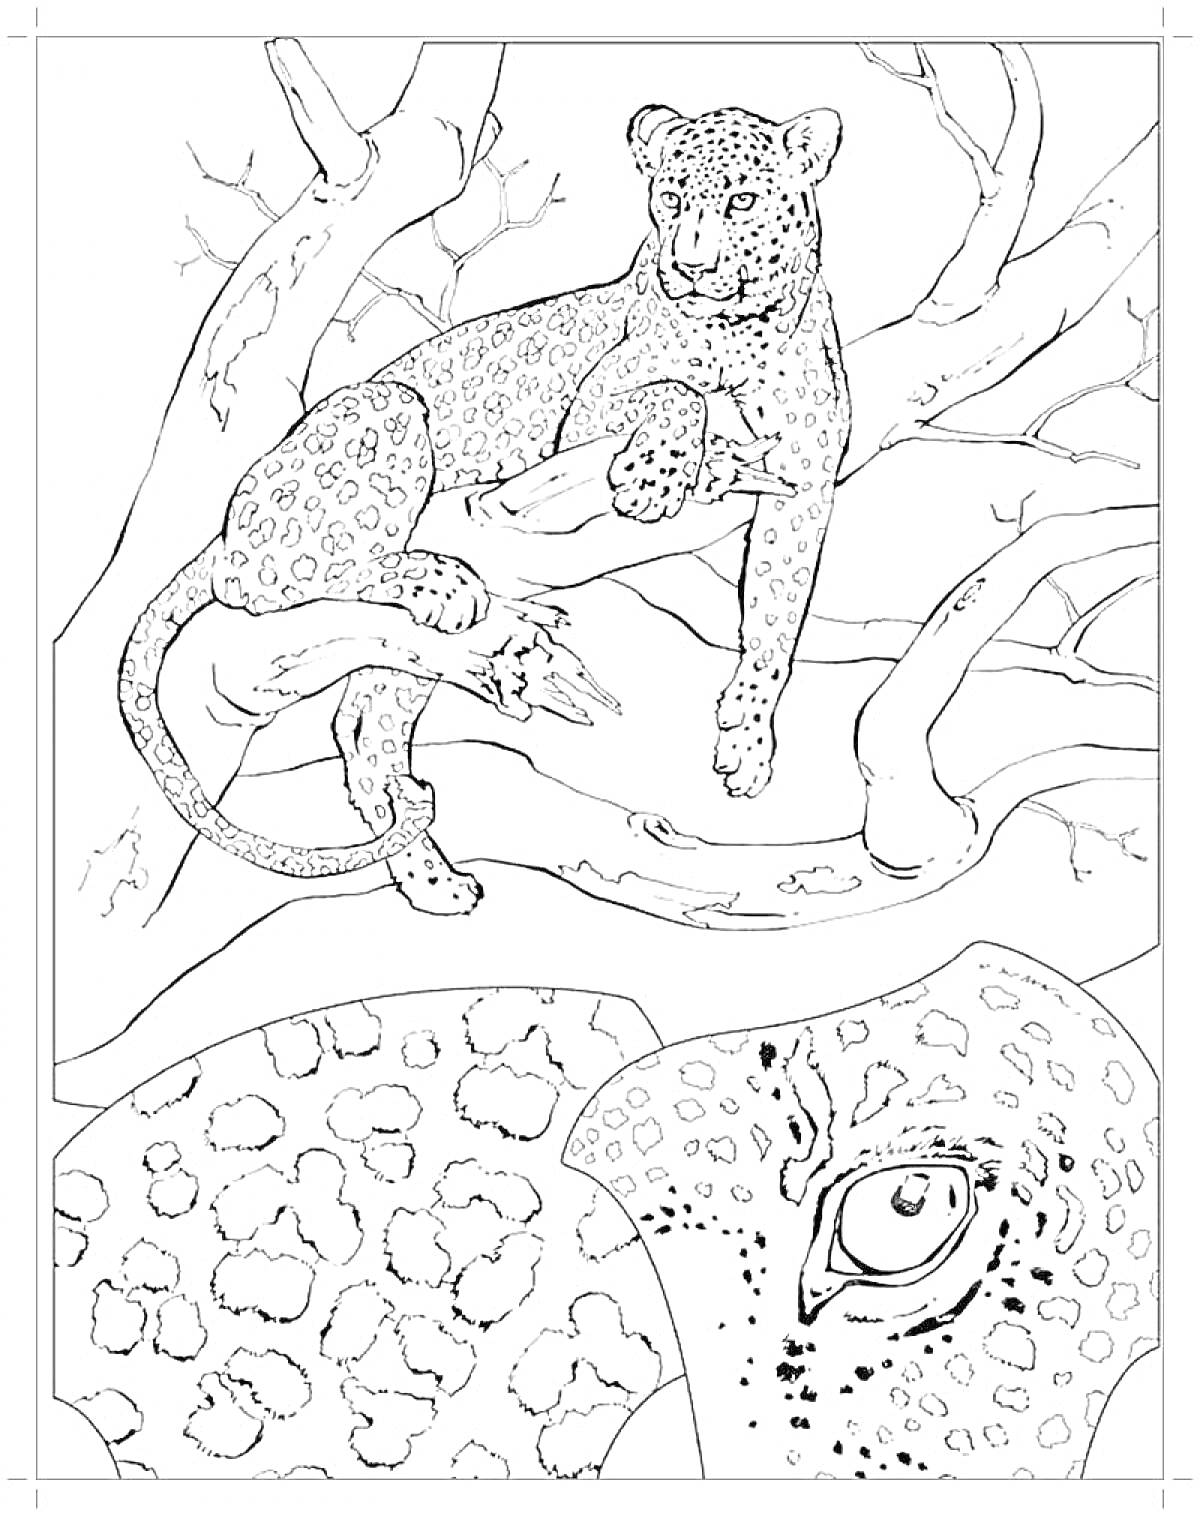 Гепард на дереве и крупный план глаза и пятен